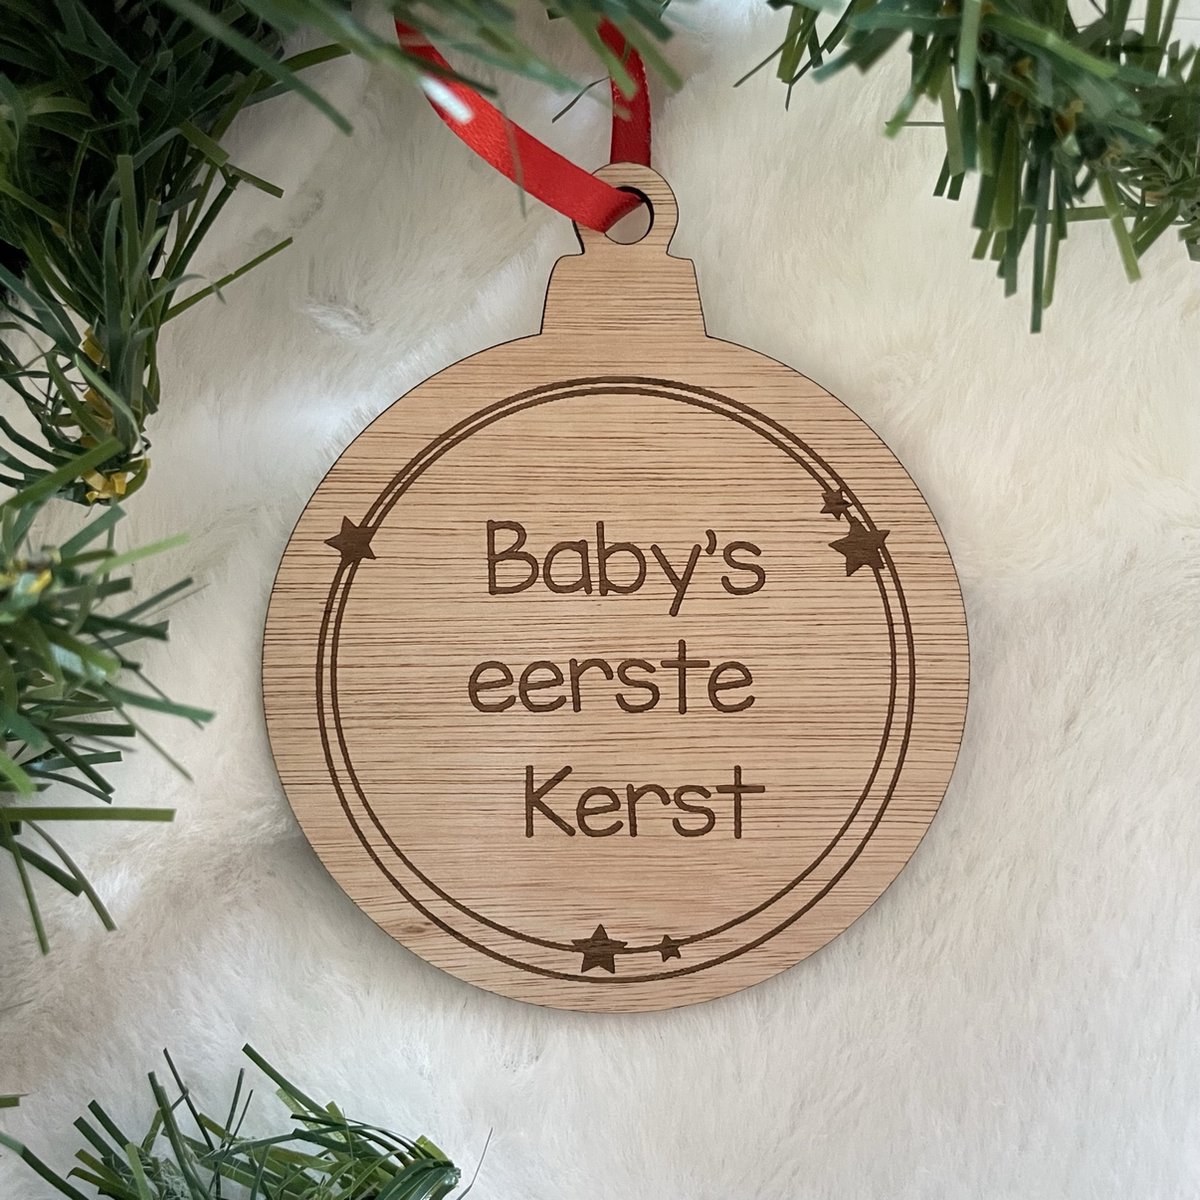 Baby's Eerste Kerst - Kerst - Baby - Kerstbal - Hout - Kerstboom - Houten Decoratie - Kerstmis - Kerstdecoratie - Kerst ornament – Versiering